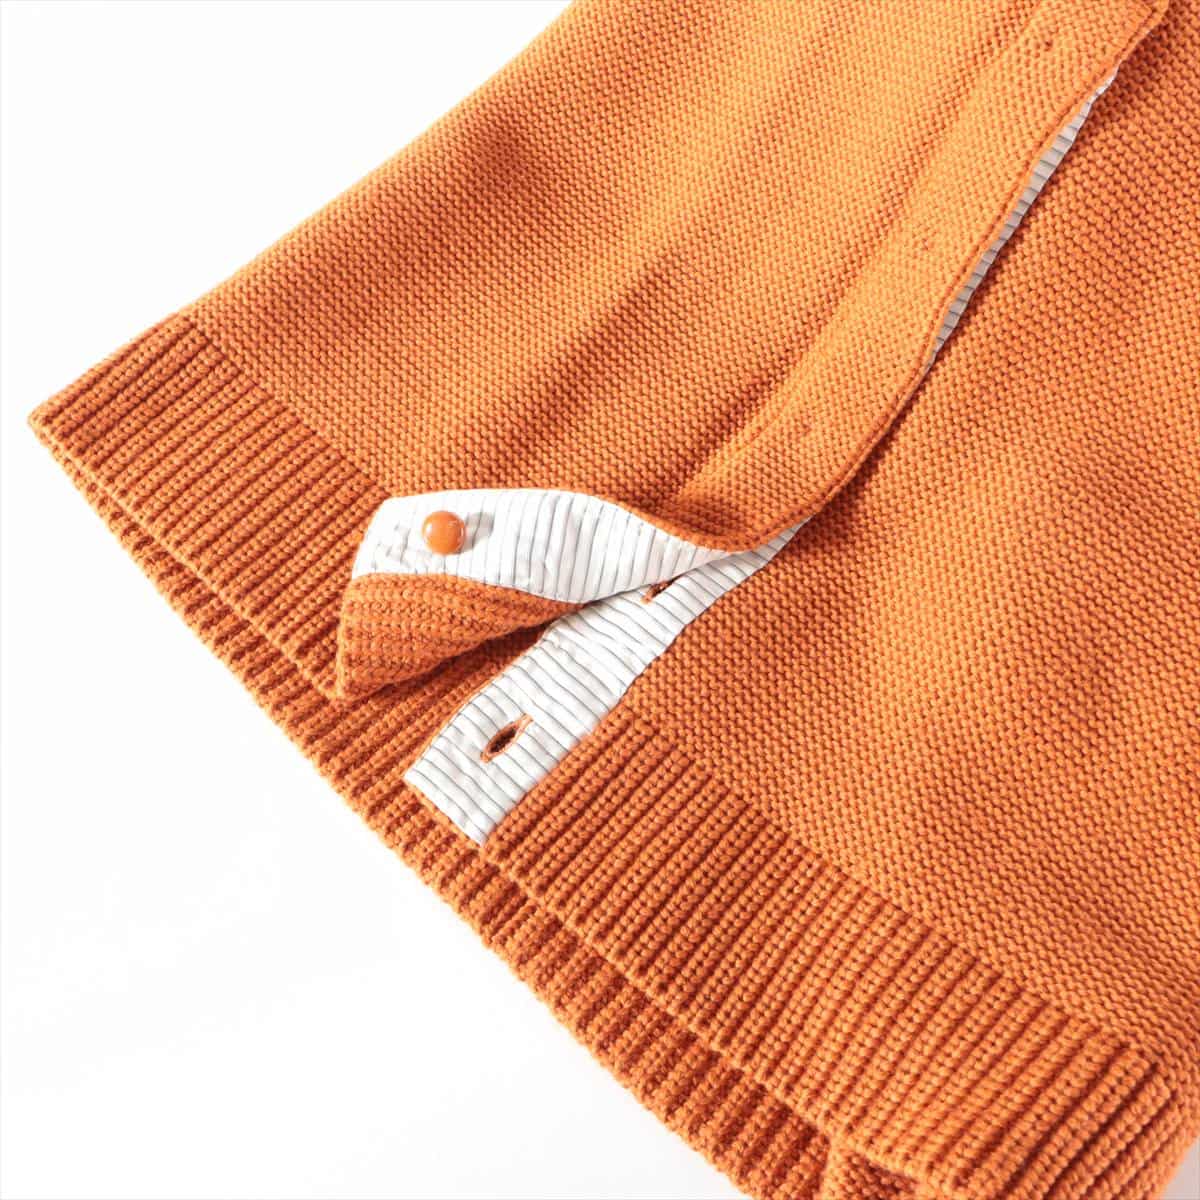 Louis Vuitton RW112 Wool & silk Knit dress XS Ladies' Pink x orange  Turtleneck